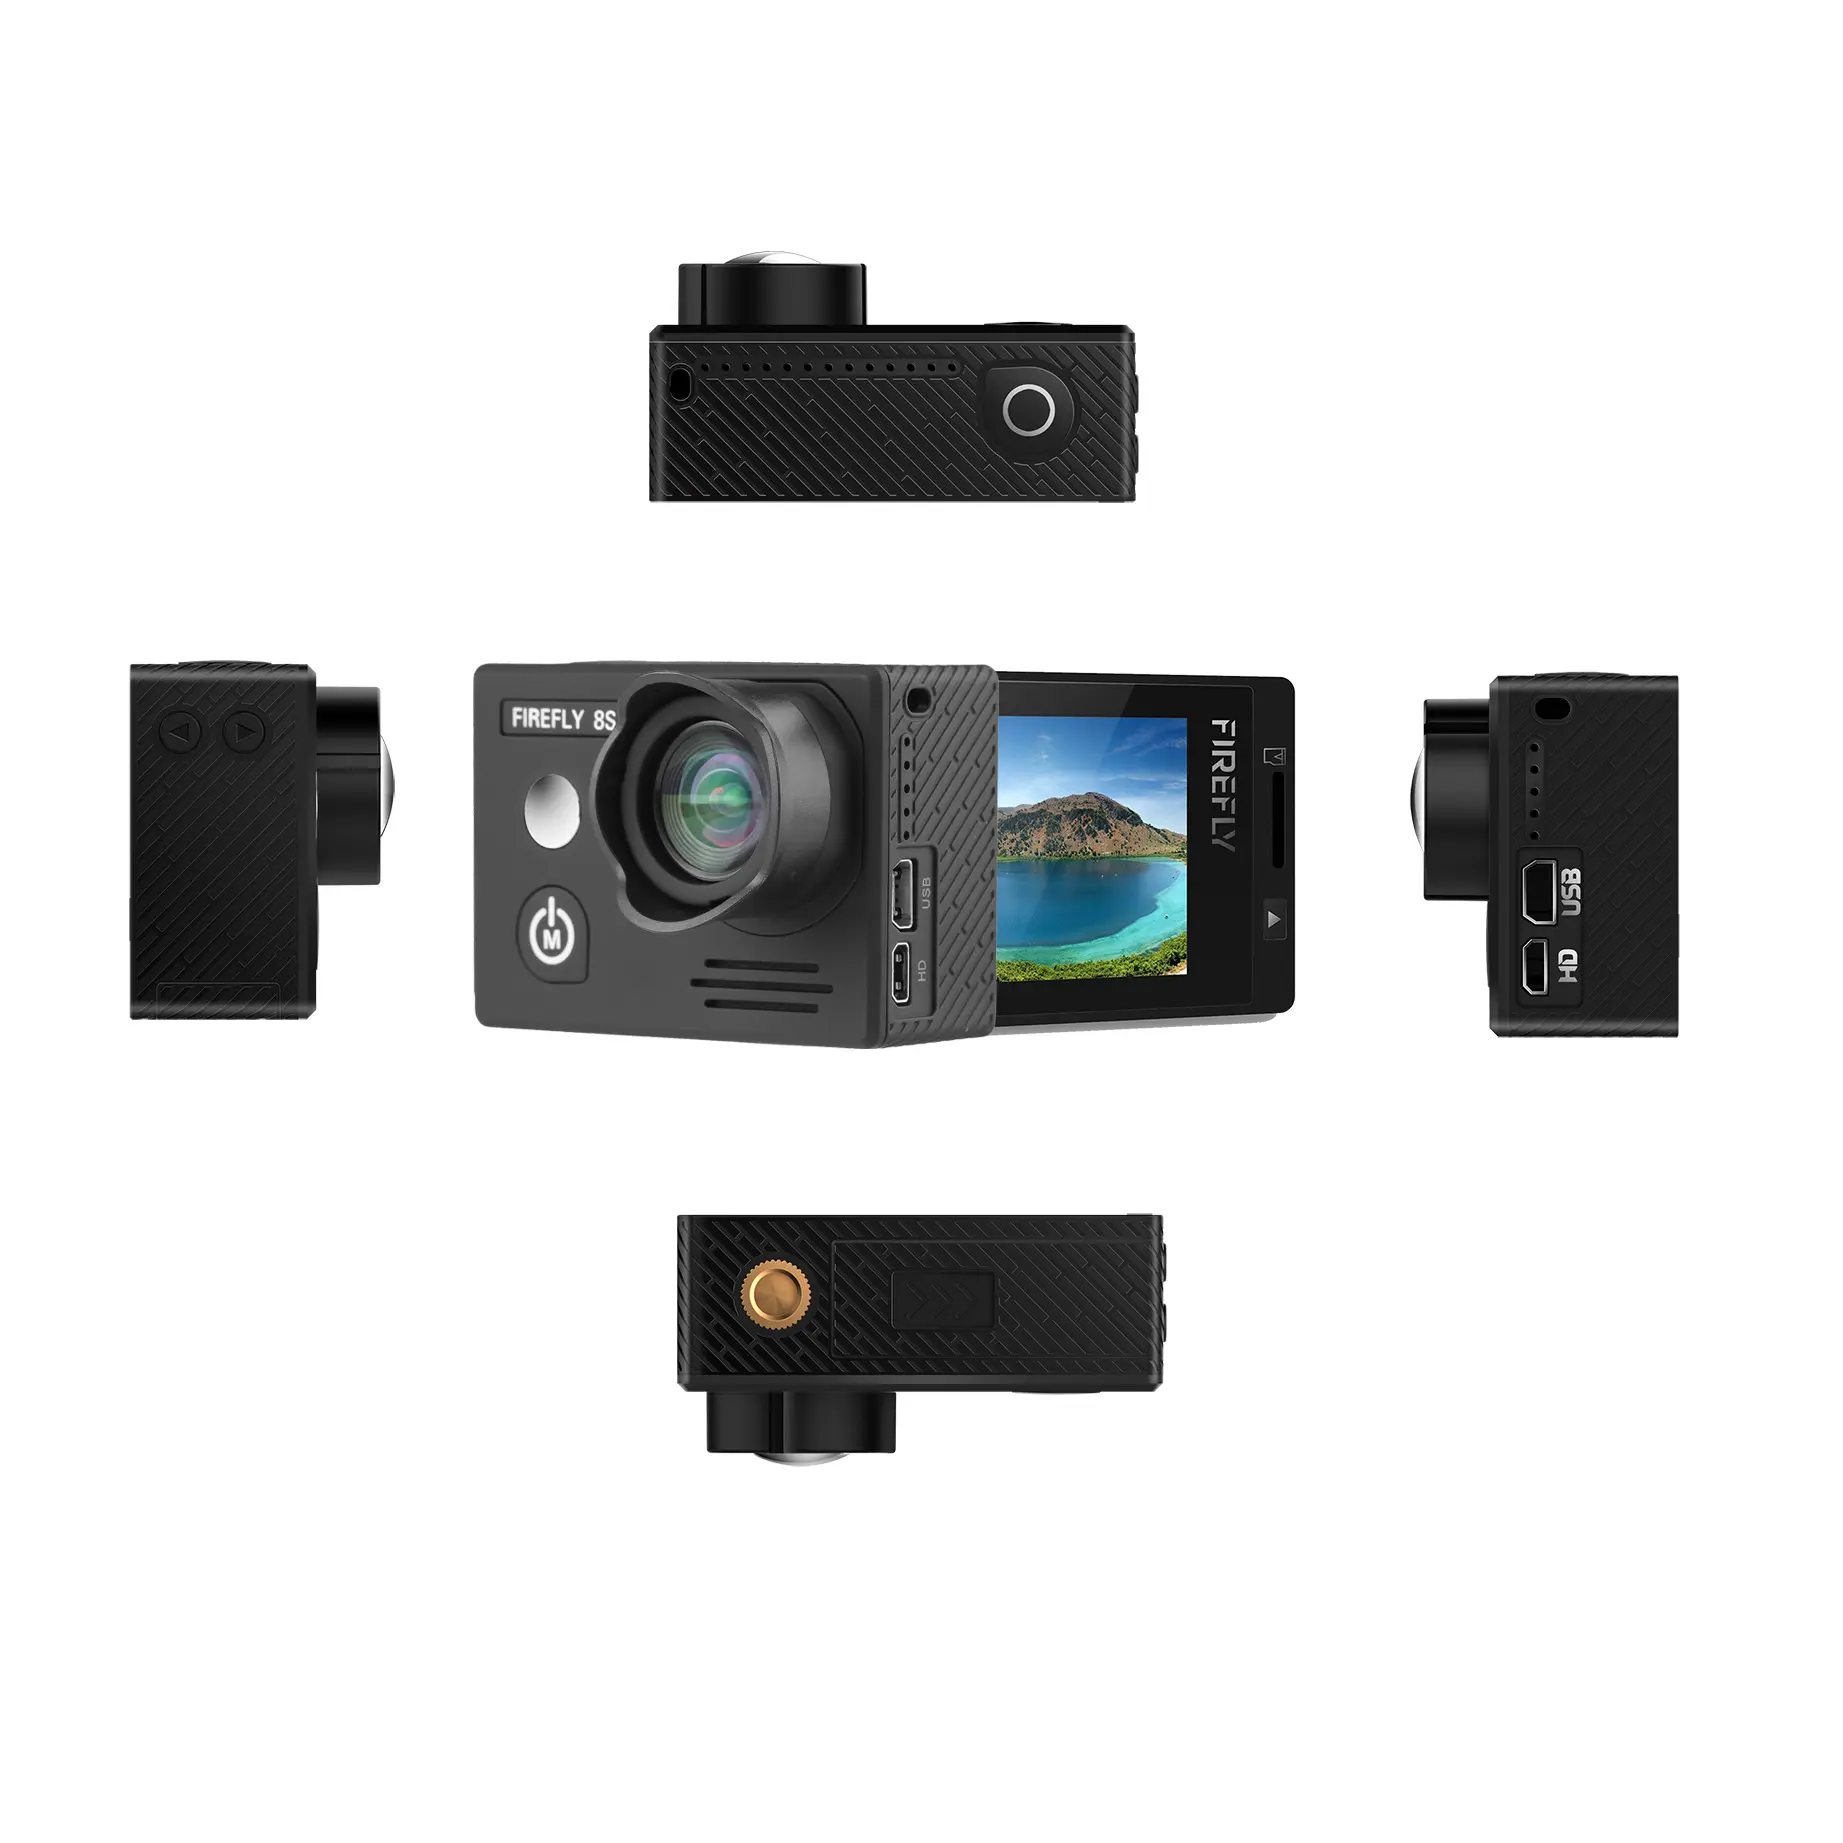 الأصلي اليراع 8s واي فاي عمل كاميرا Ambarella A12 الترا HD حقيقي 4K 30fps 12MP الصورة ل مستشعر سوني للماء كاميرا رياضية